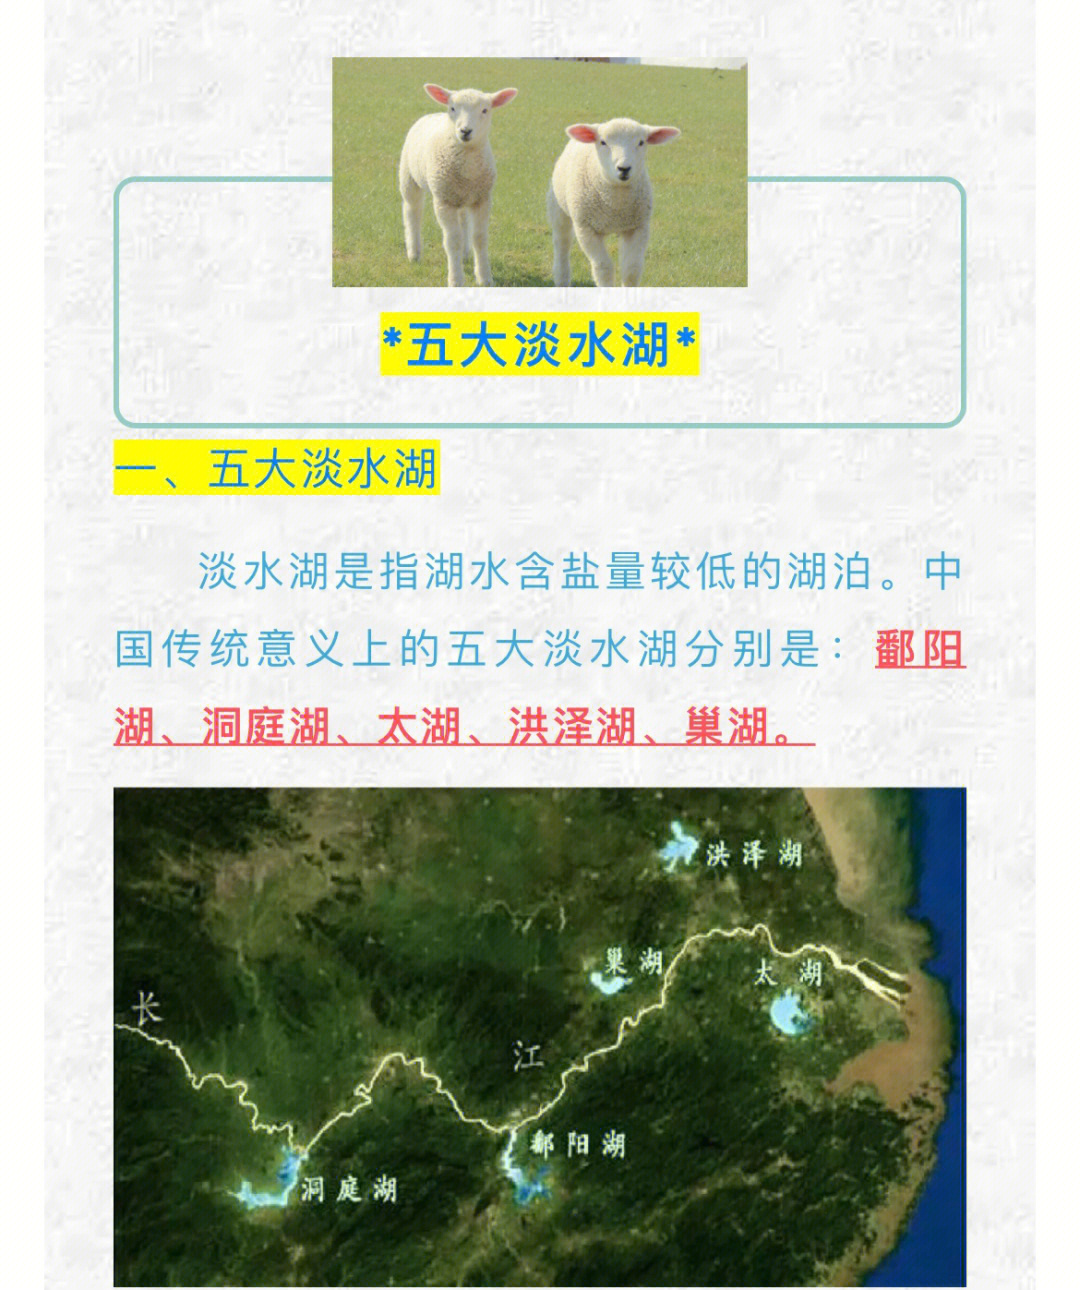 公考常识打卡15中国五大淡水湖